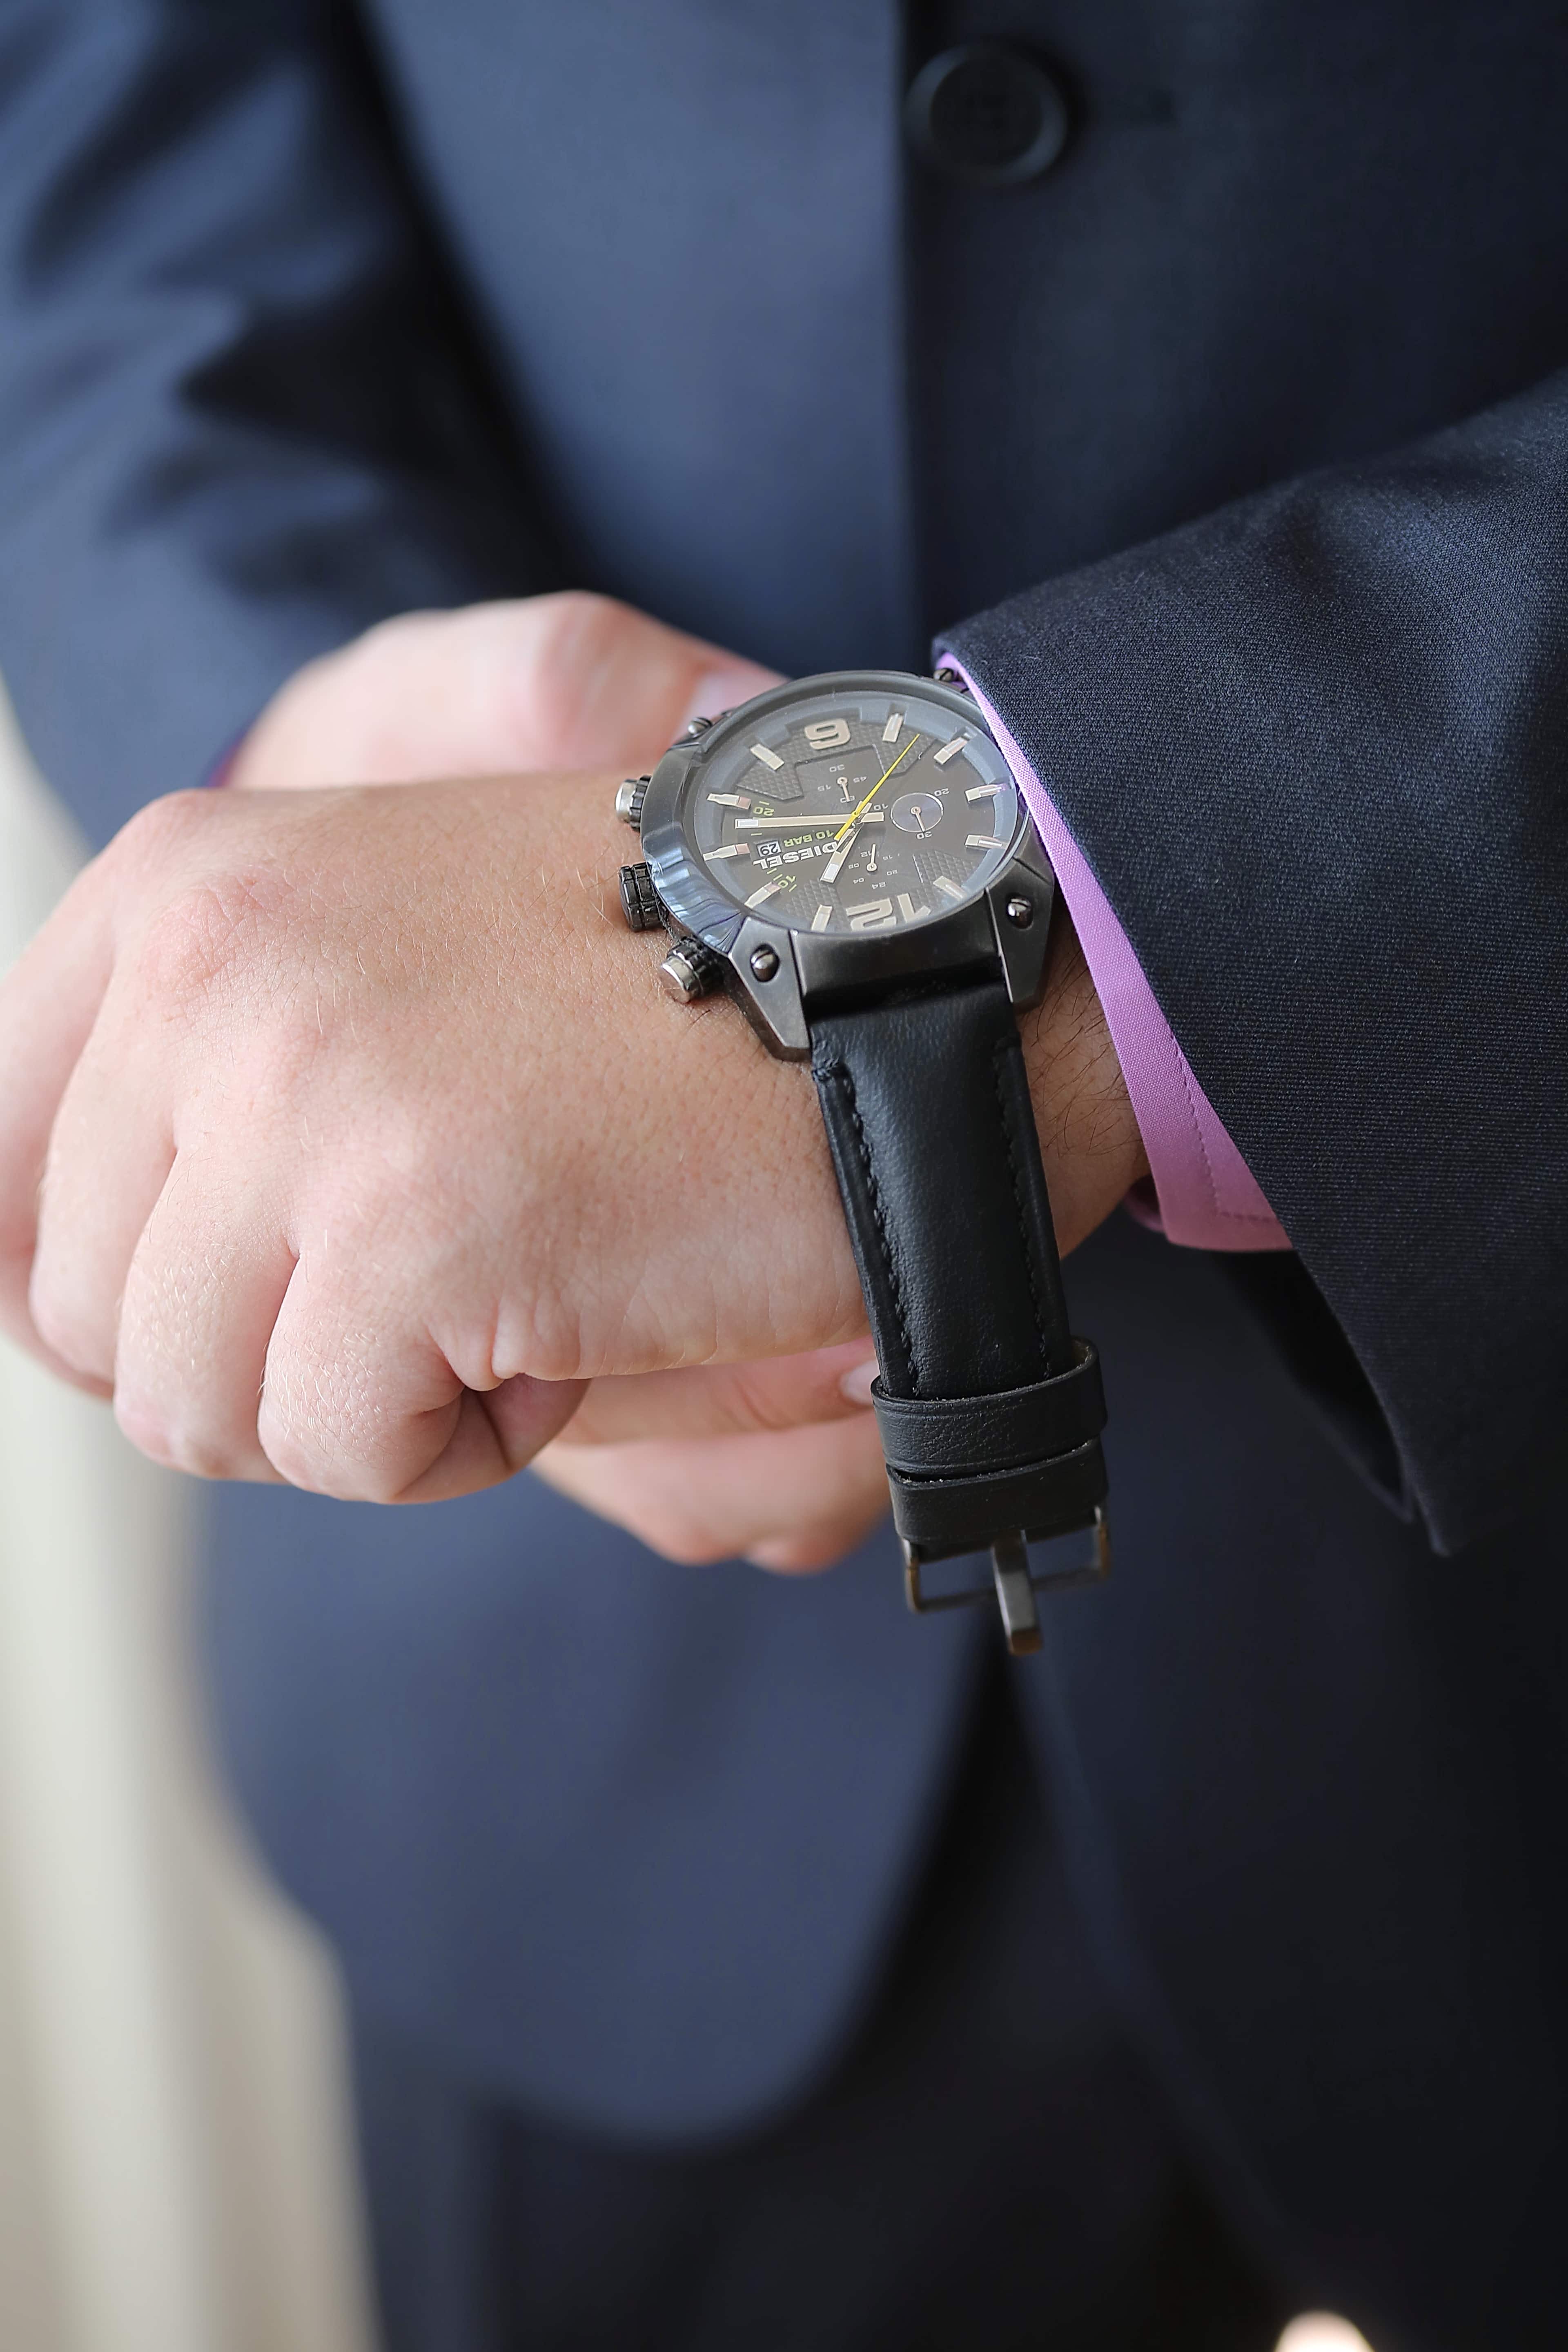 Час джентльмена. Бизнесмен часы. Предприниматель часы. Часы джентльмена. Современные часы на руку.